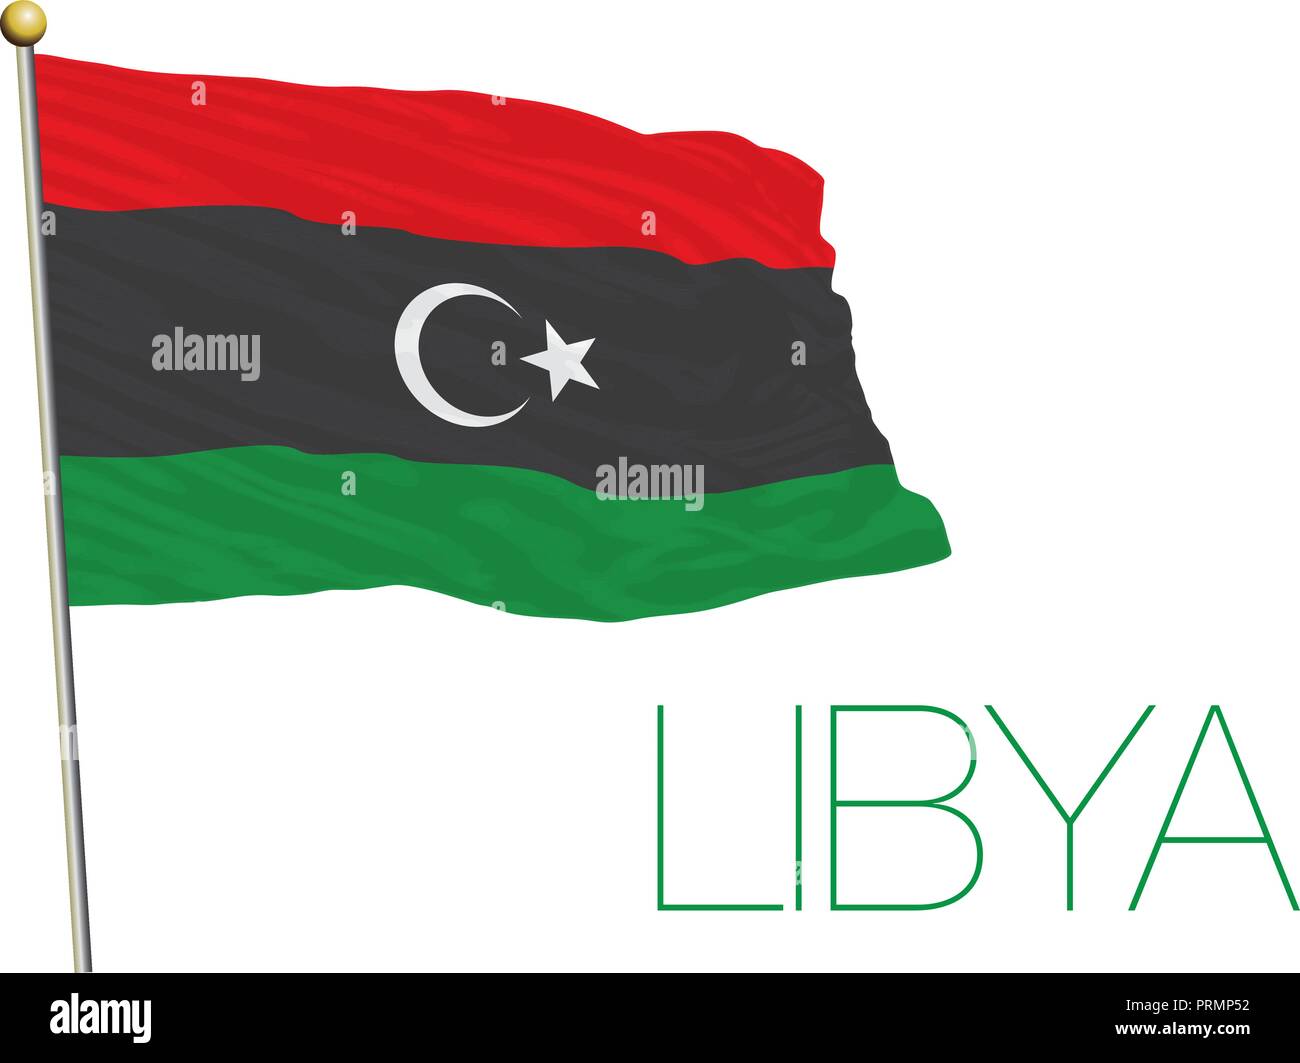 Libya official flag, vector illustration Stock Vector